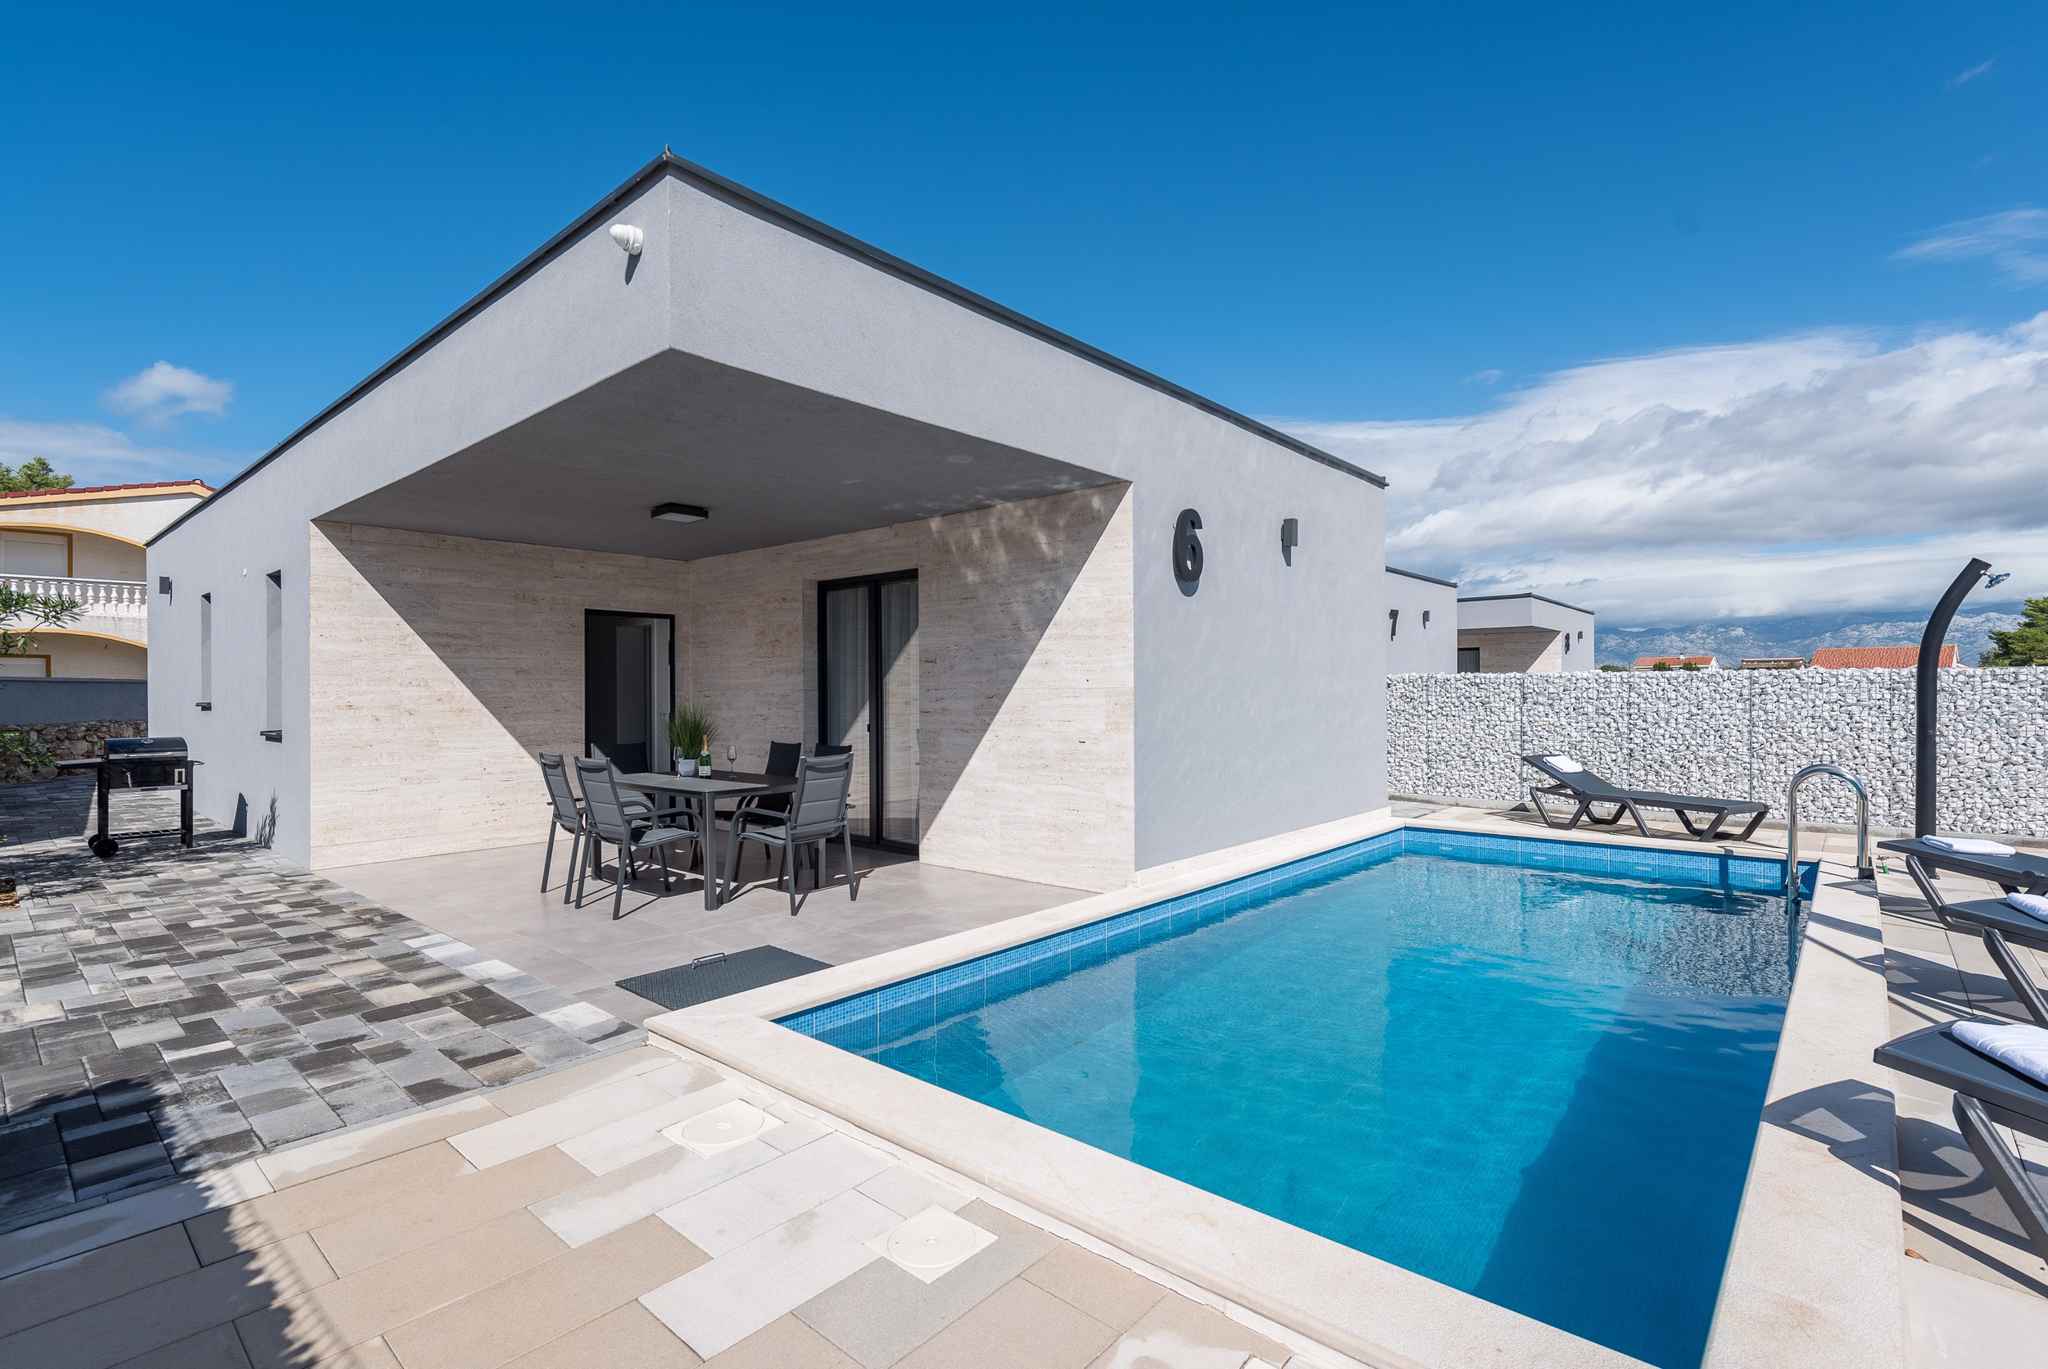 Villa mit 4 Sternen mit Pool in einem Luxusresort  Ferienhaus in Kroatien